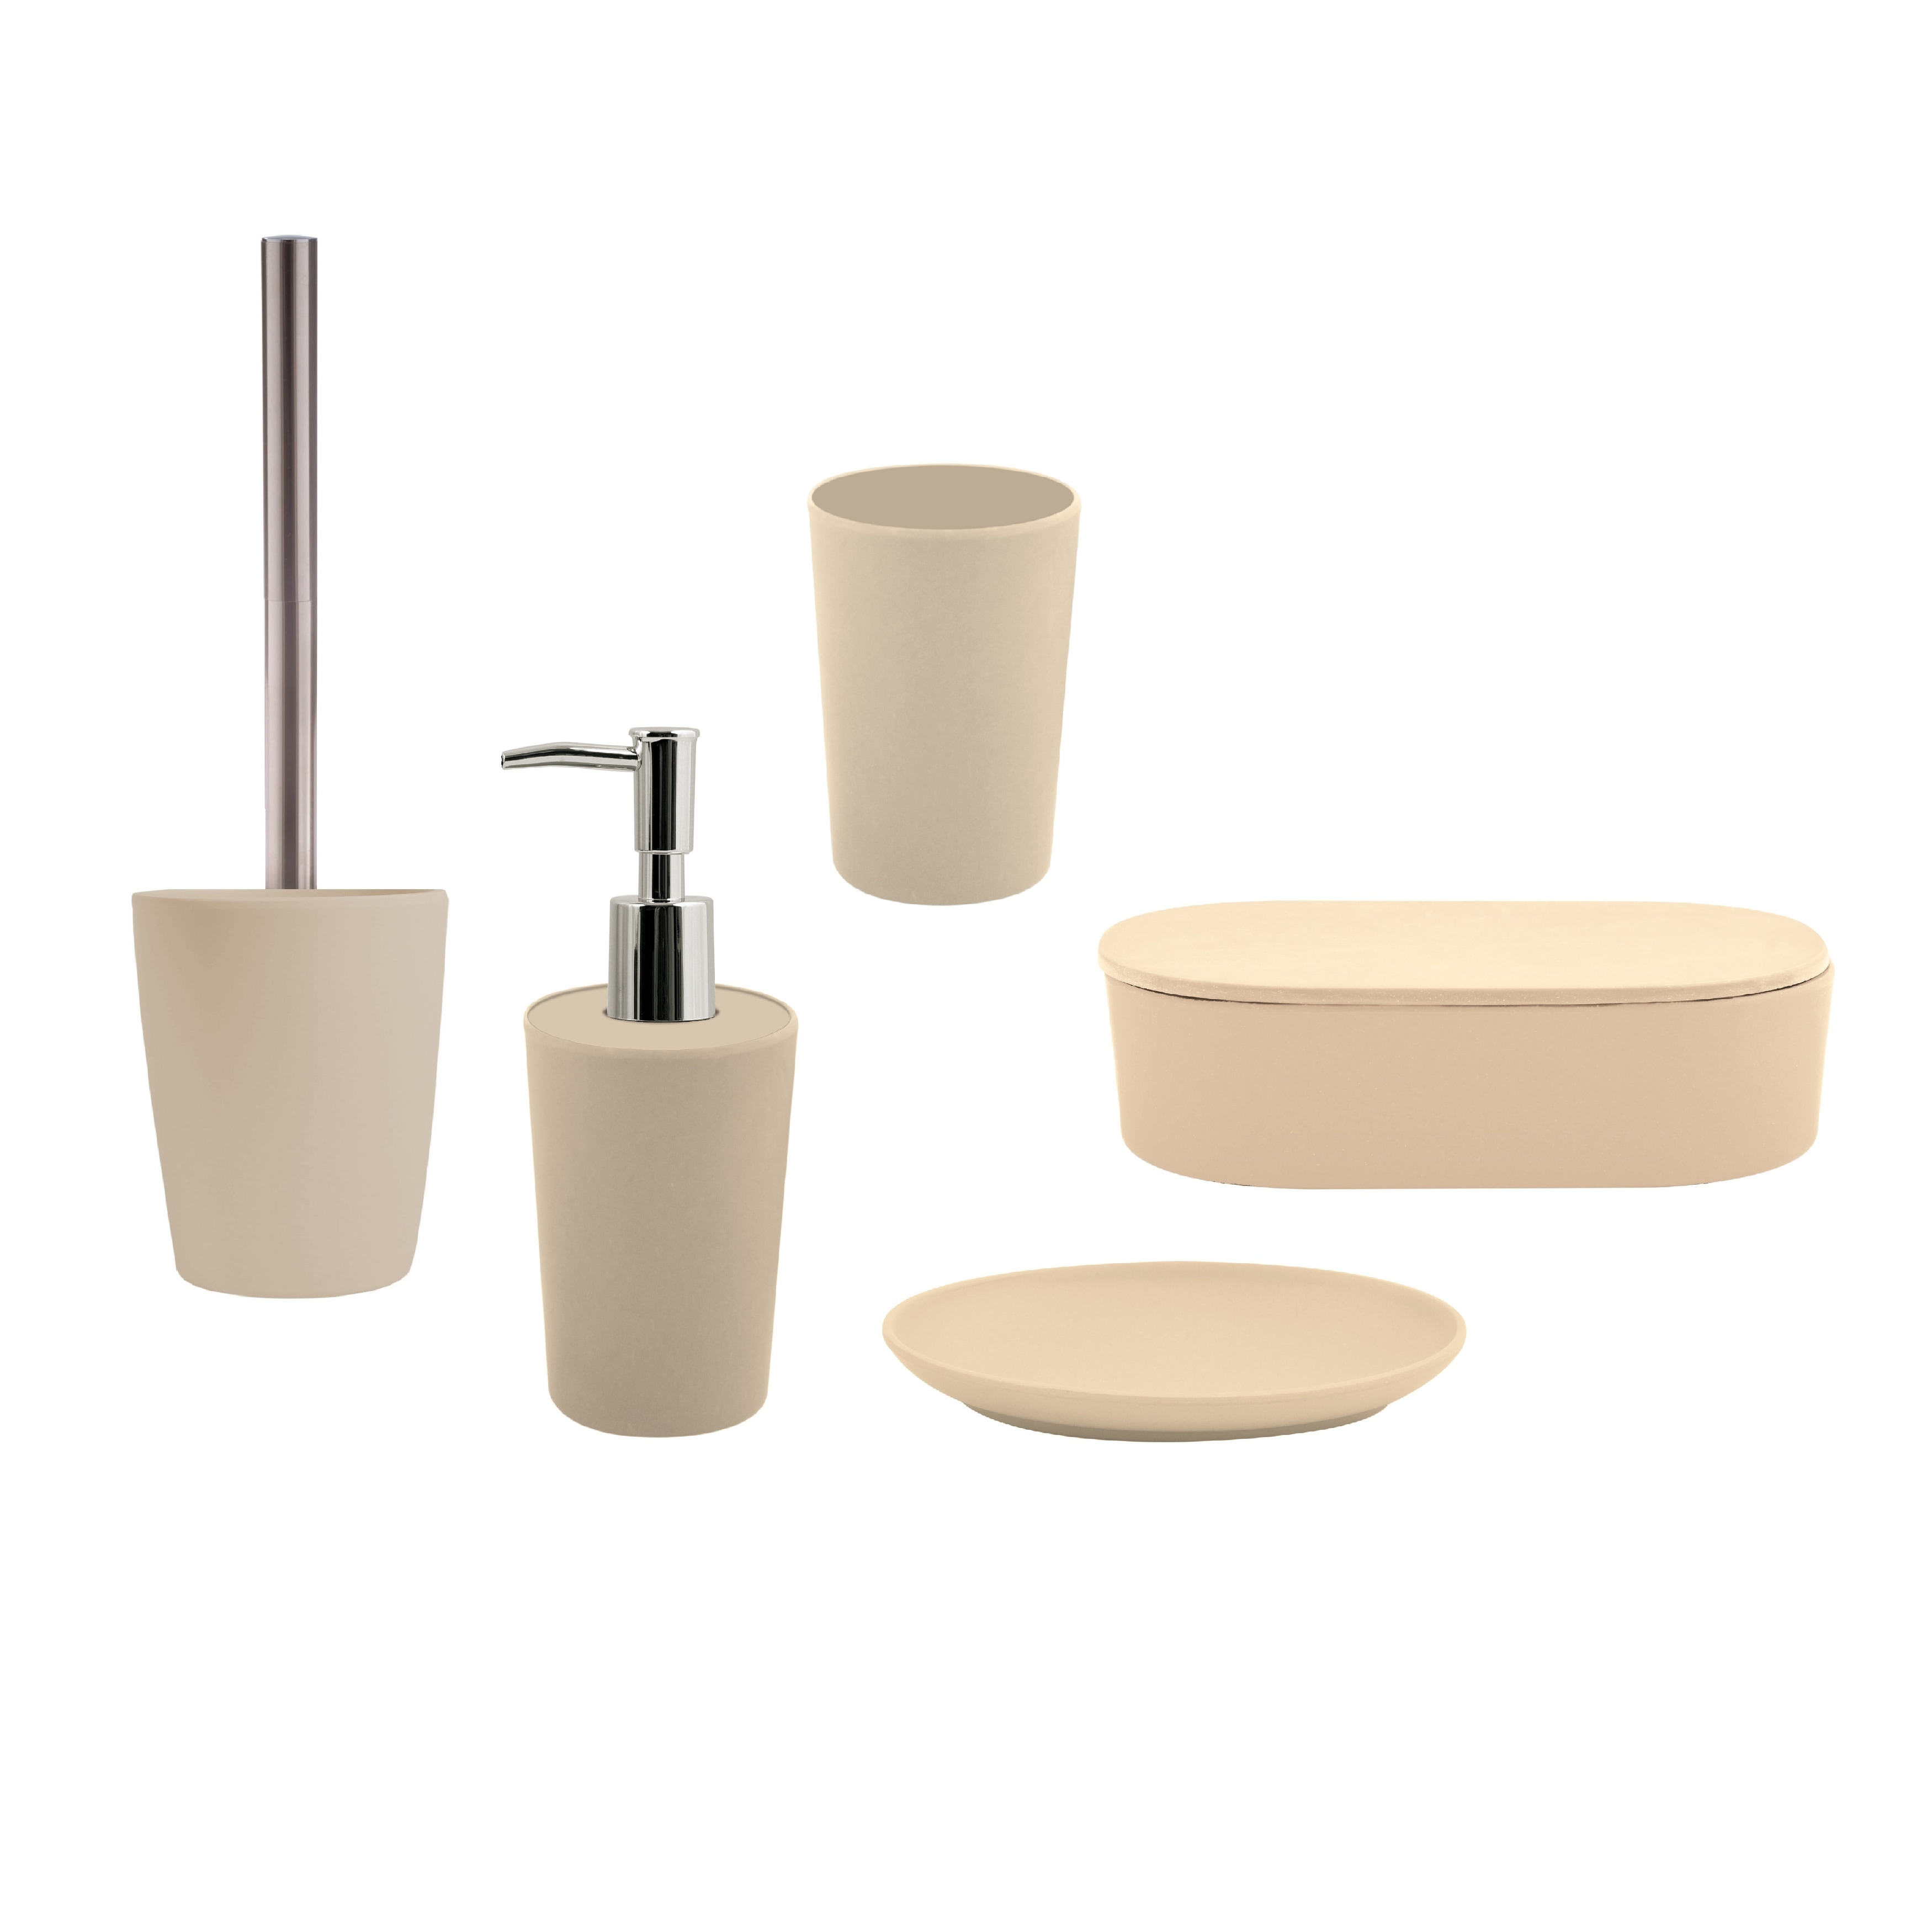 In dienst nemen zout toezicht houden op 5-Piece Bathroom Accessories Set Spirella Takeo Beige Bamboo - Overstock -  31831585